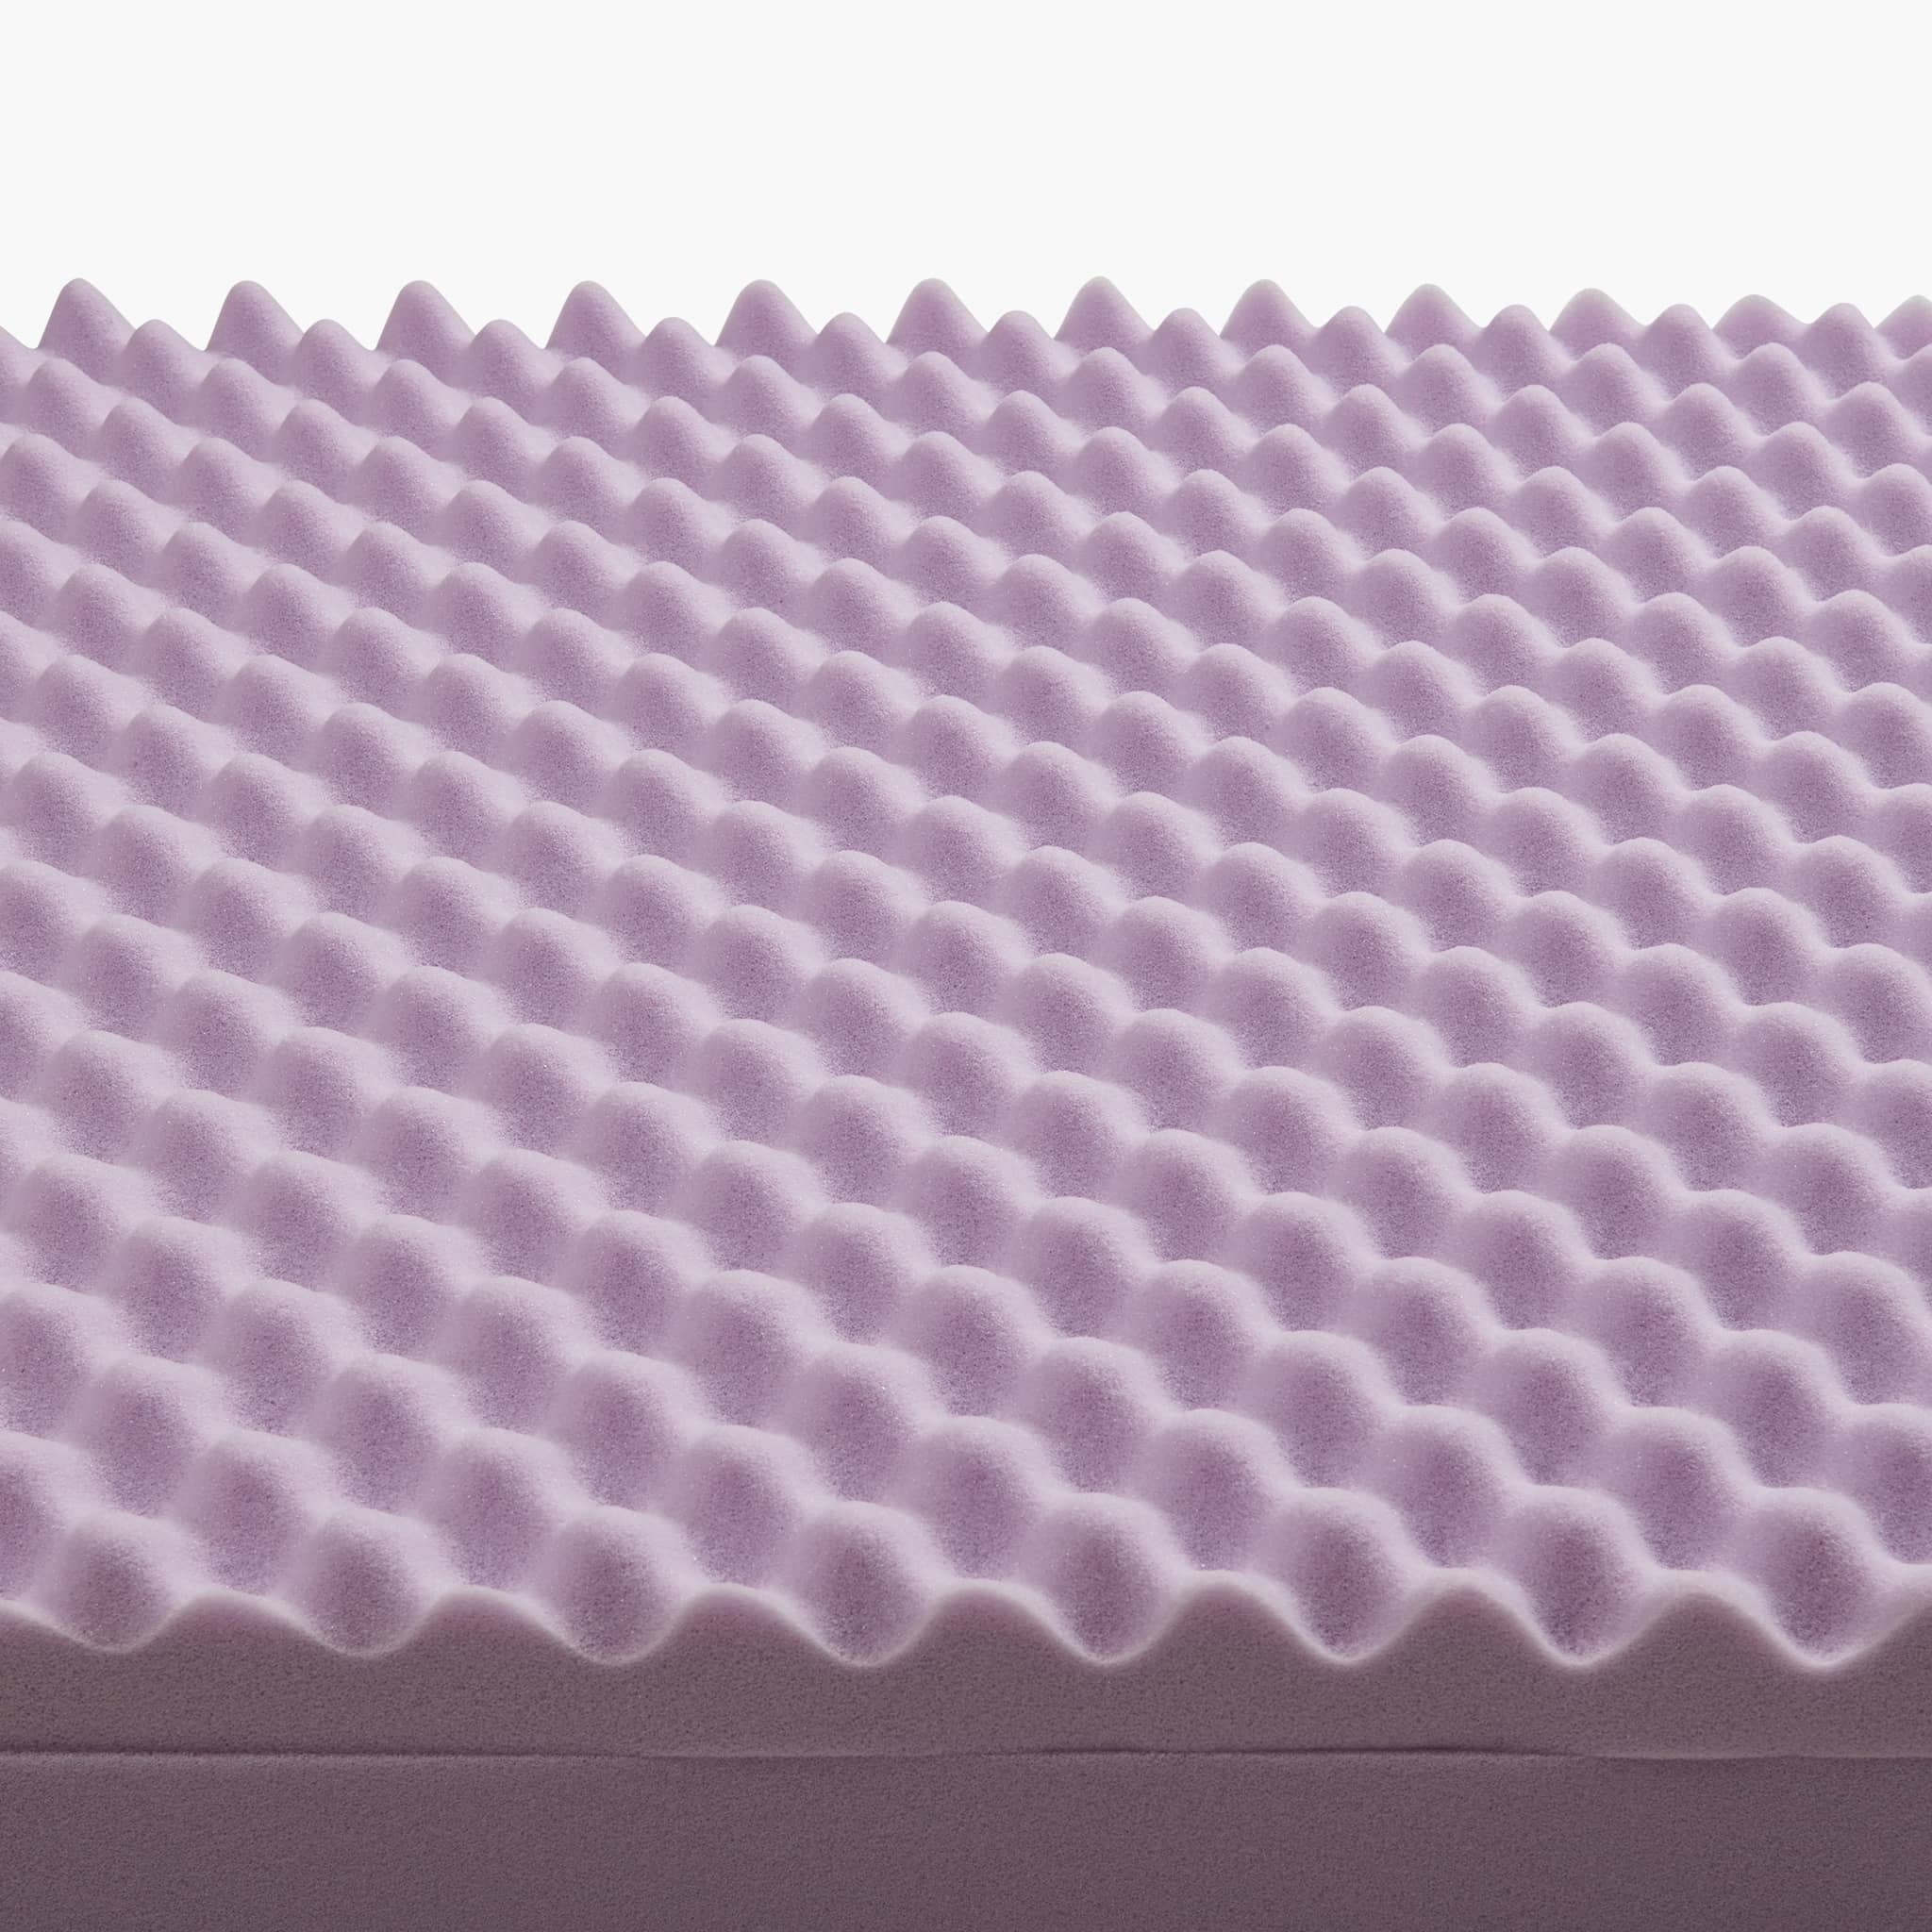 Orthopedic Memory Foam Bed